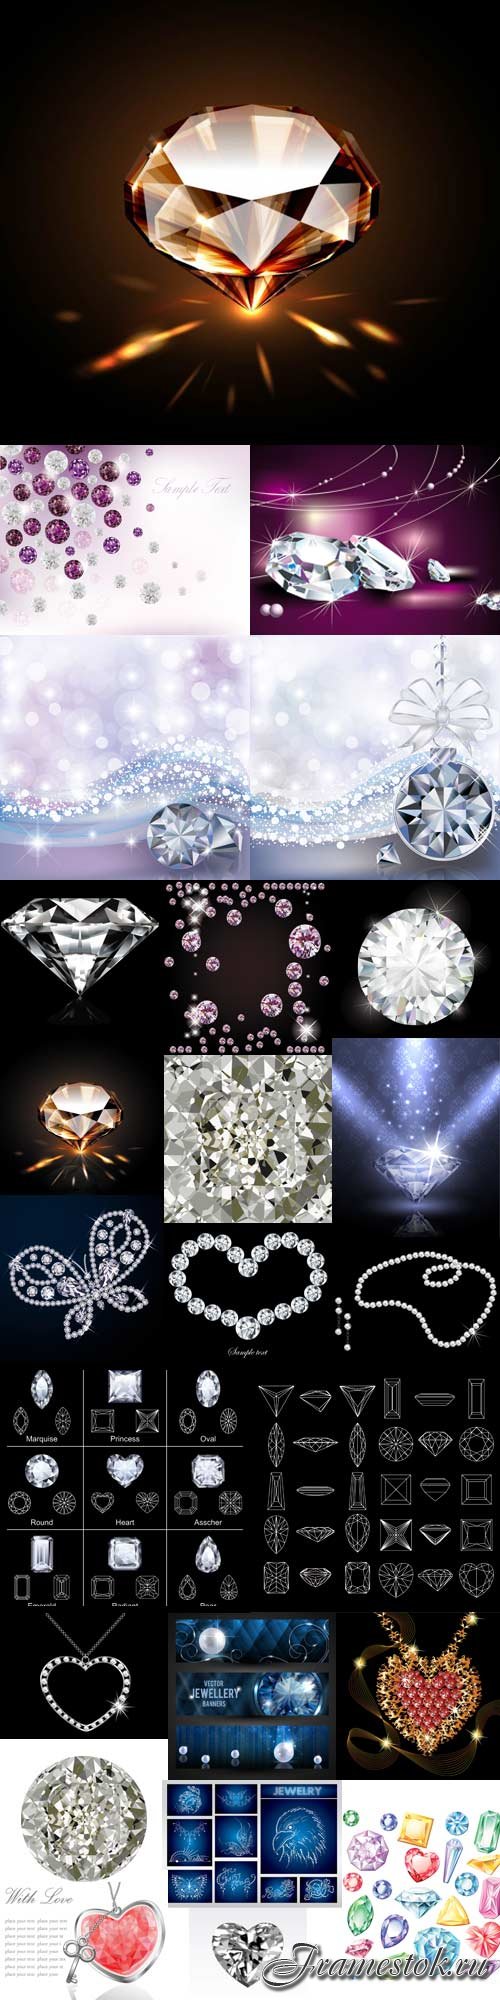 Stunning Illustrations diamonds